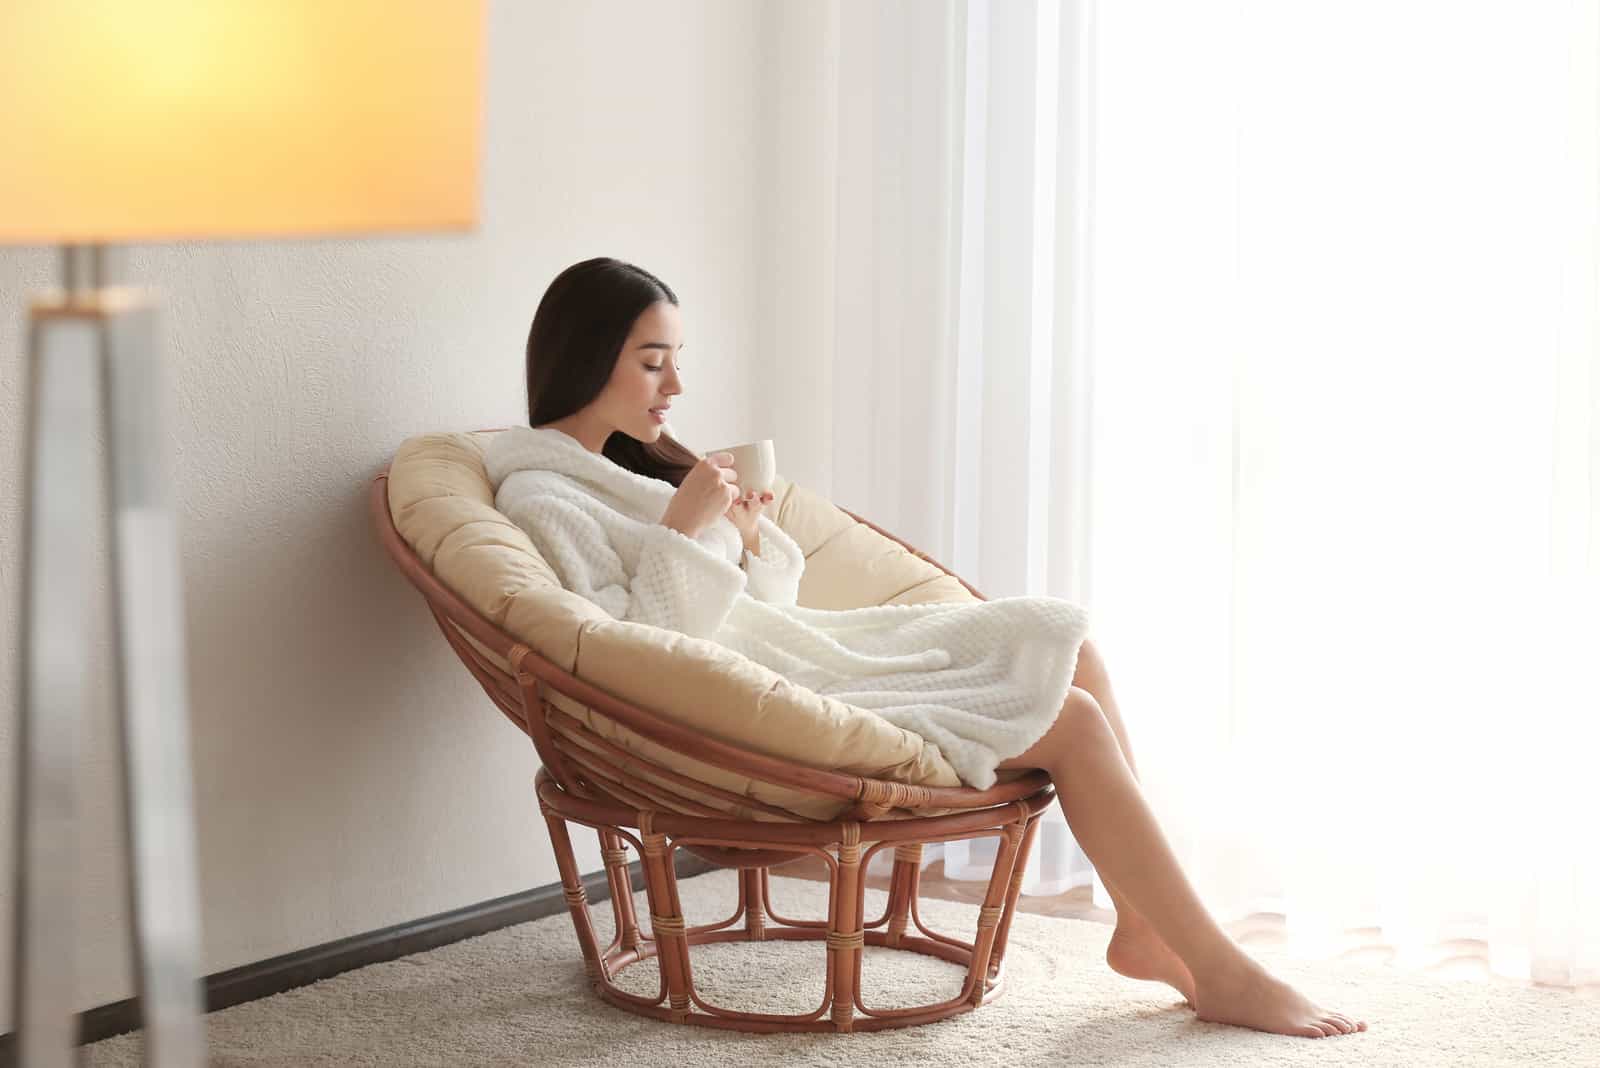 une femme en peignoir assise sur une chaise buvant du café